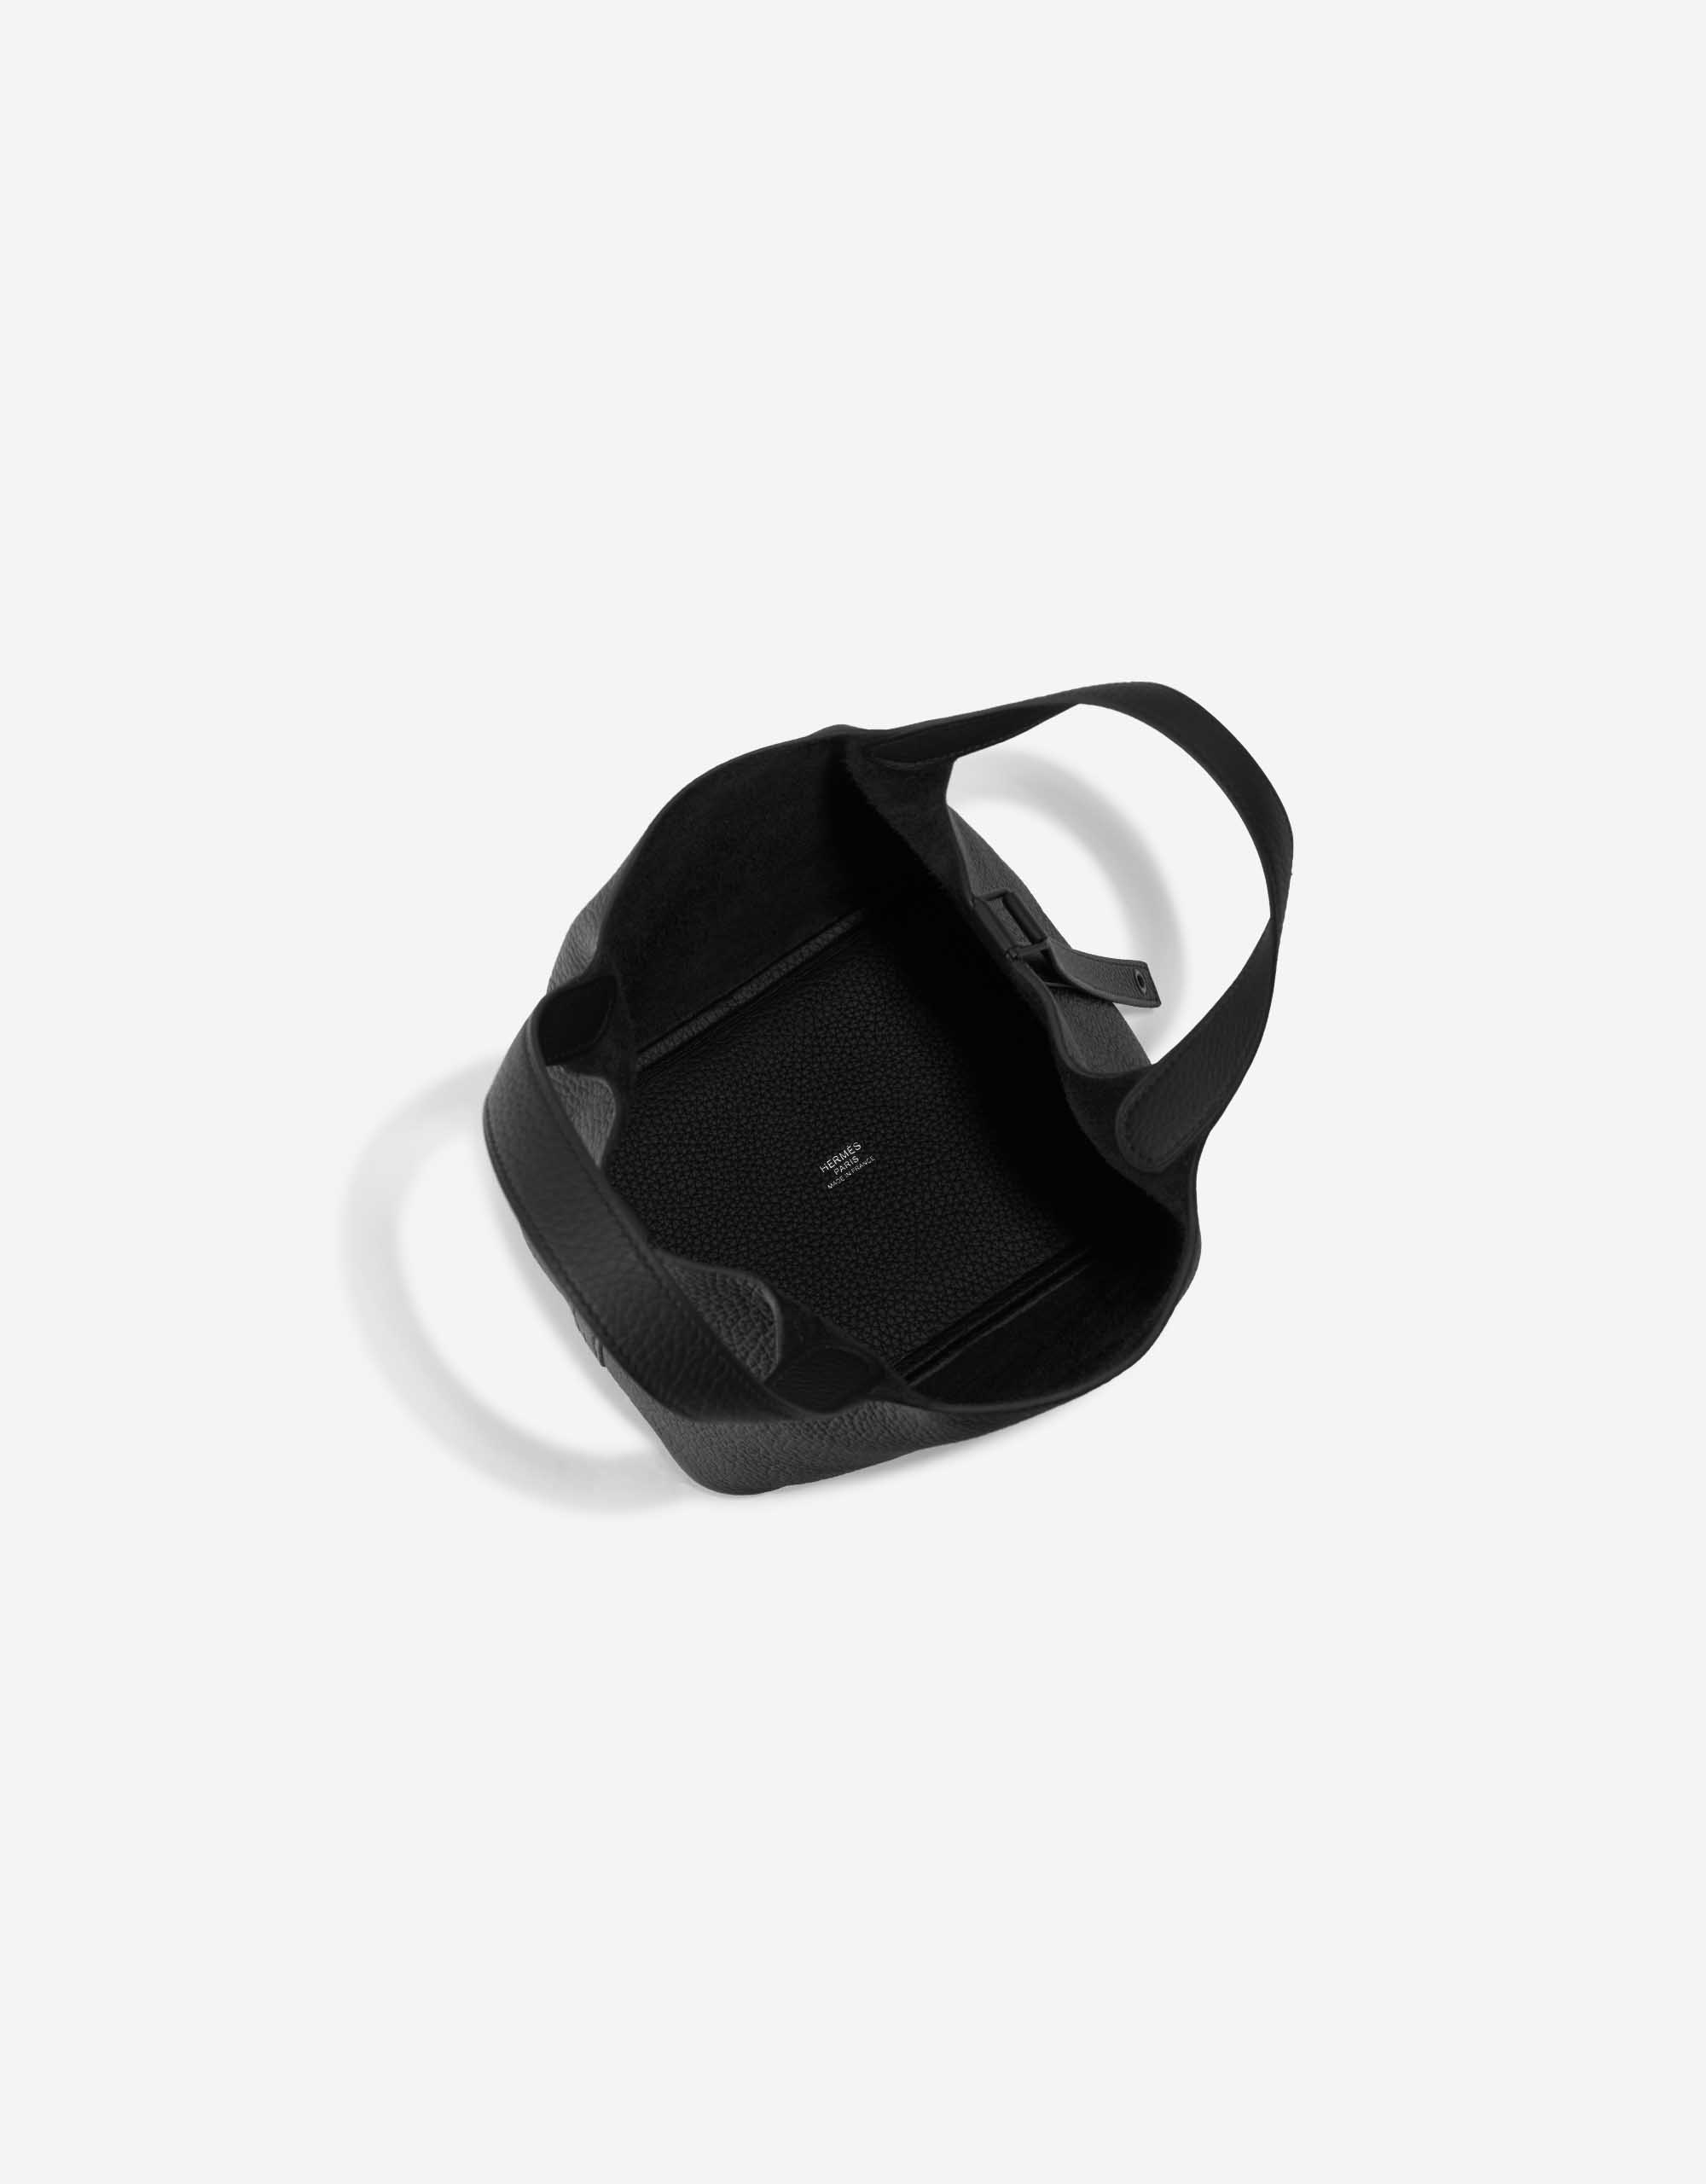 Pre-owned Hermès bag Picotin 18 Clemence So Black Black Inside | Sell your designer bag on Saclab.com